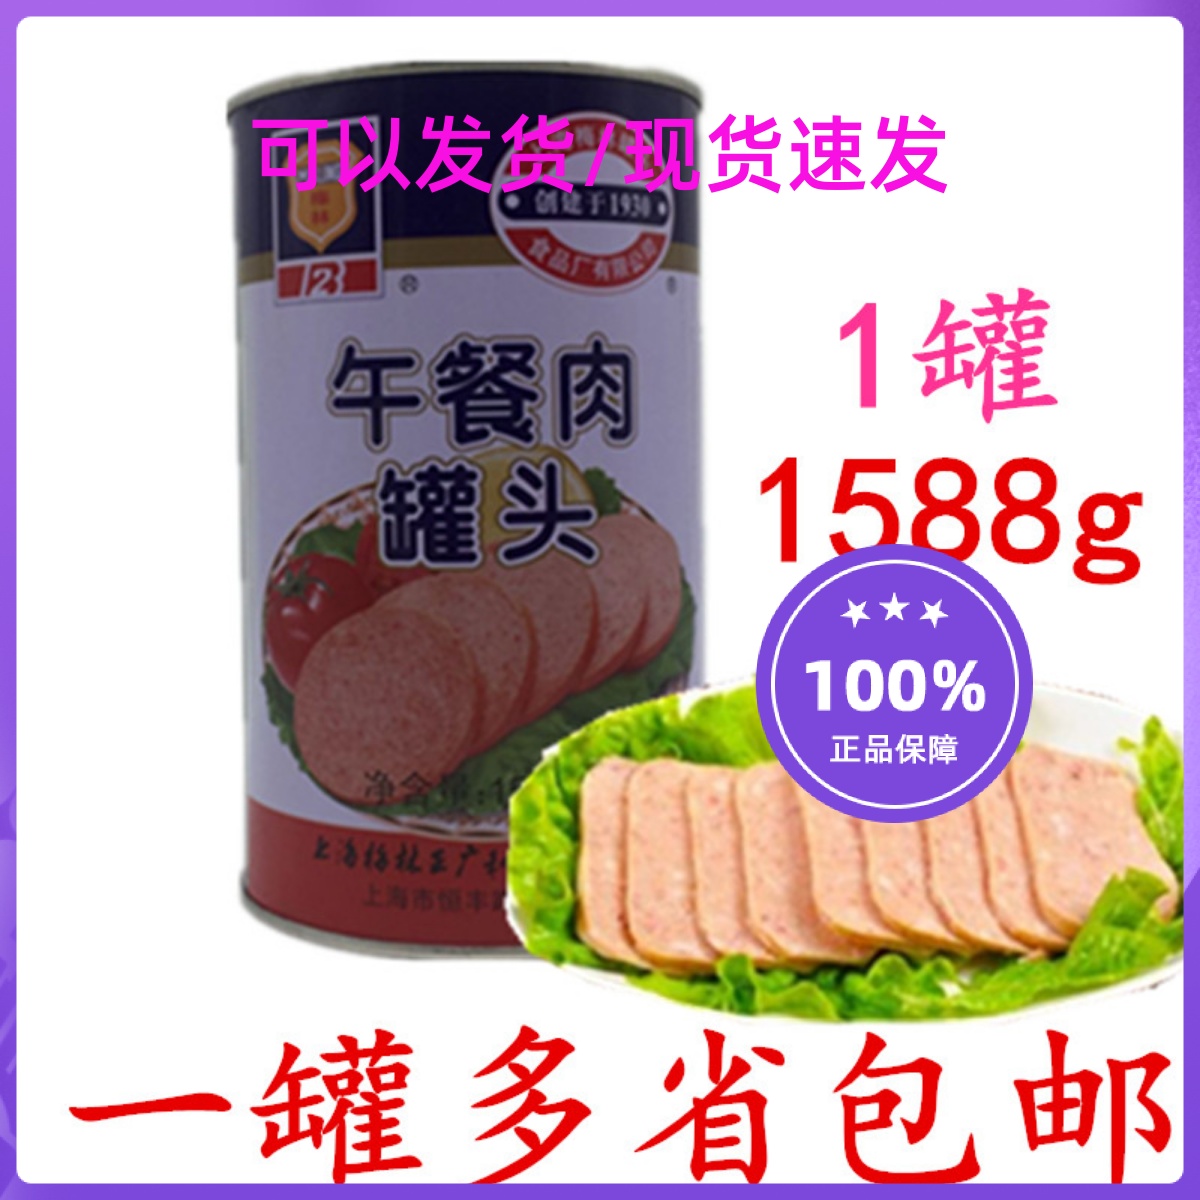 包邮上海梅林午餐肉罐头1588g/罐 火锅店 茶餐厅午餐肉实惠装